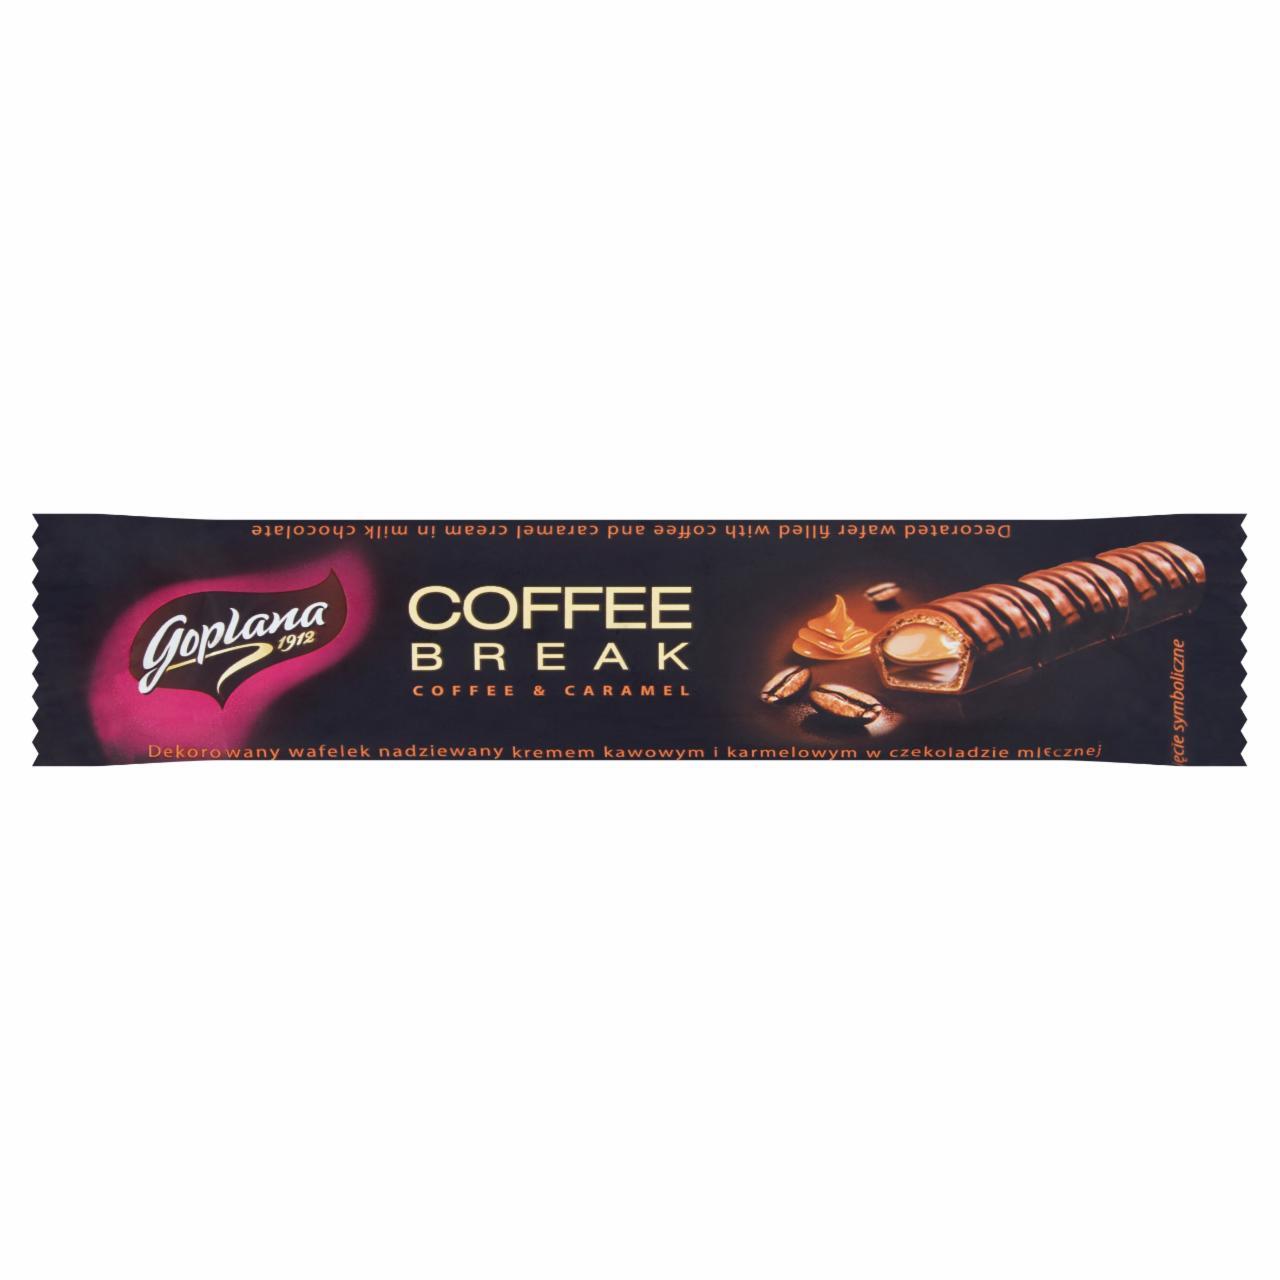 Zdjęcia - Goplana Coffee Break Wafelek nadziewany kremem kakaowym i karmelowym w czekoladzie 24 g